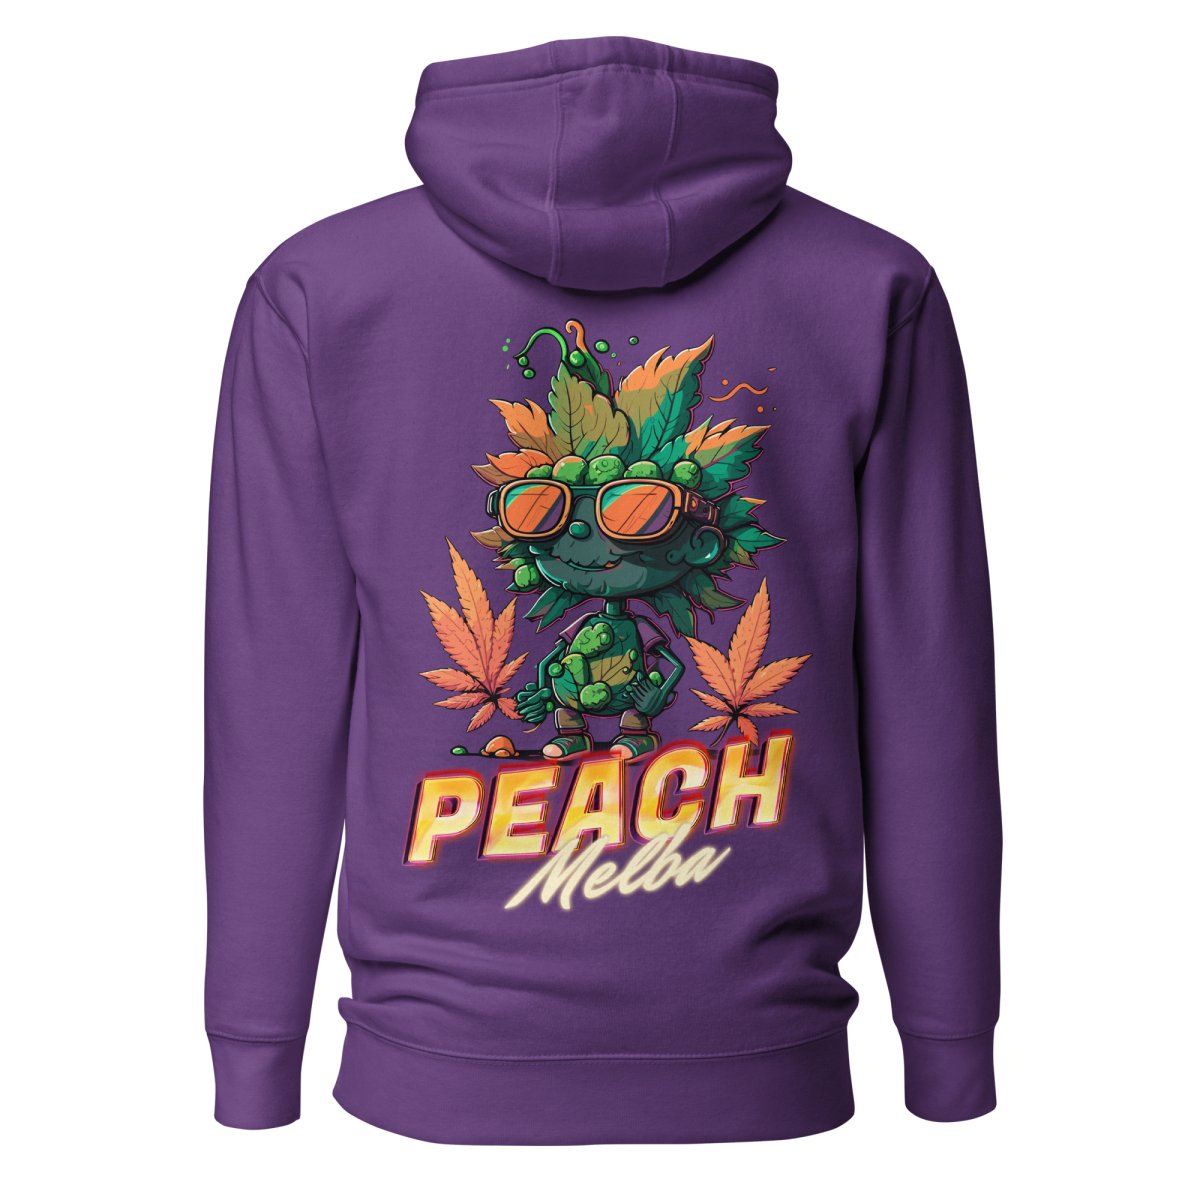 Peach Melba Hoodie - Mainly High